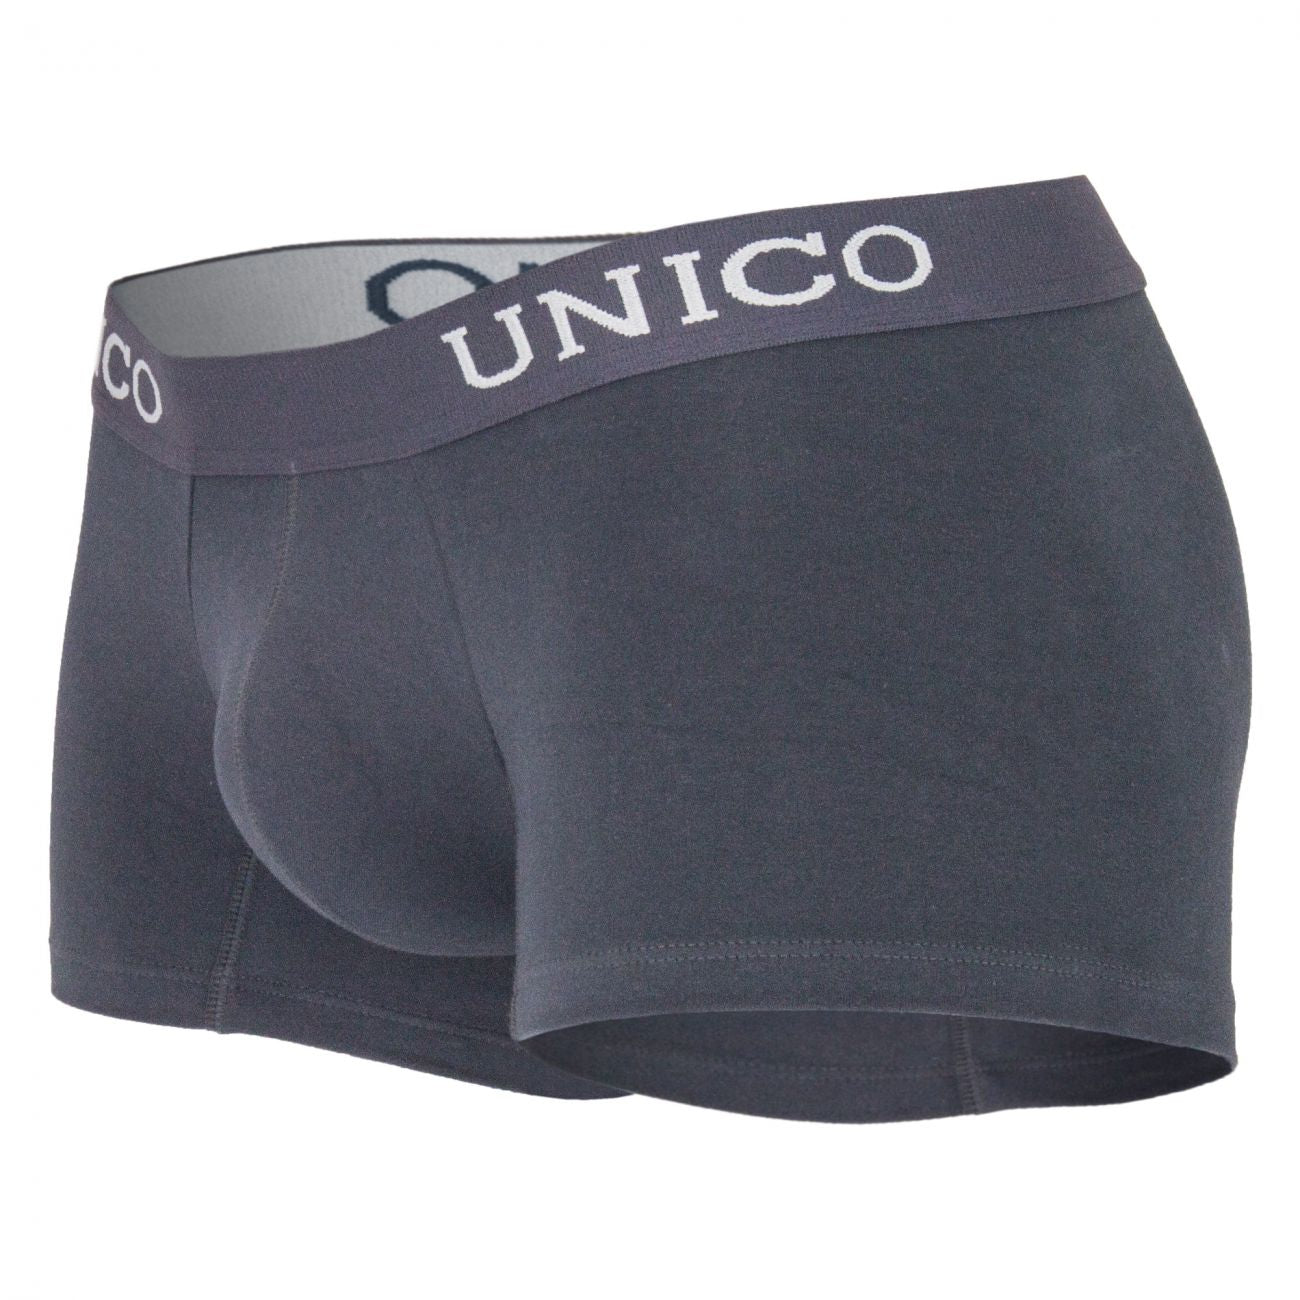 Unico 1200080196 Boxer Briefs Asfalto Gray